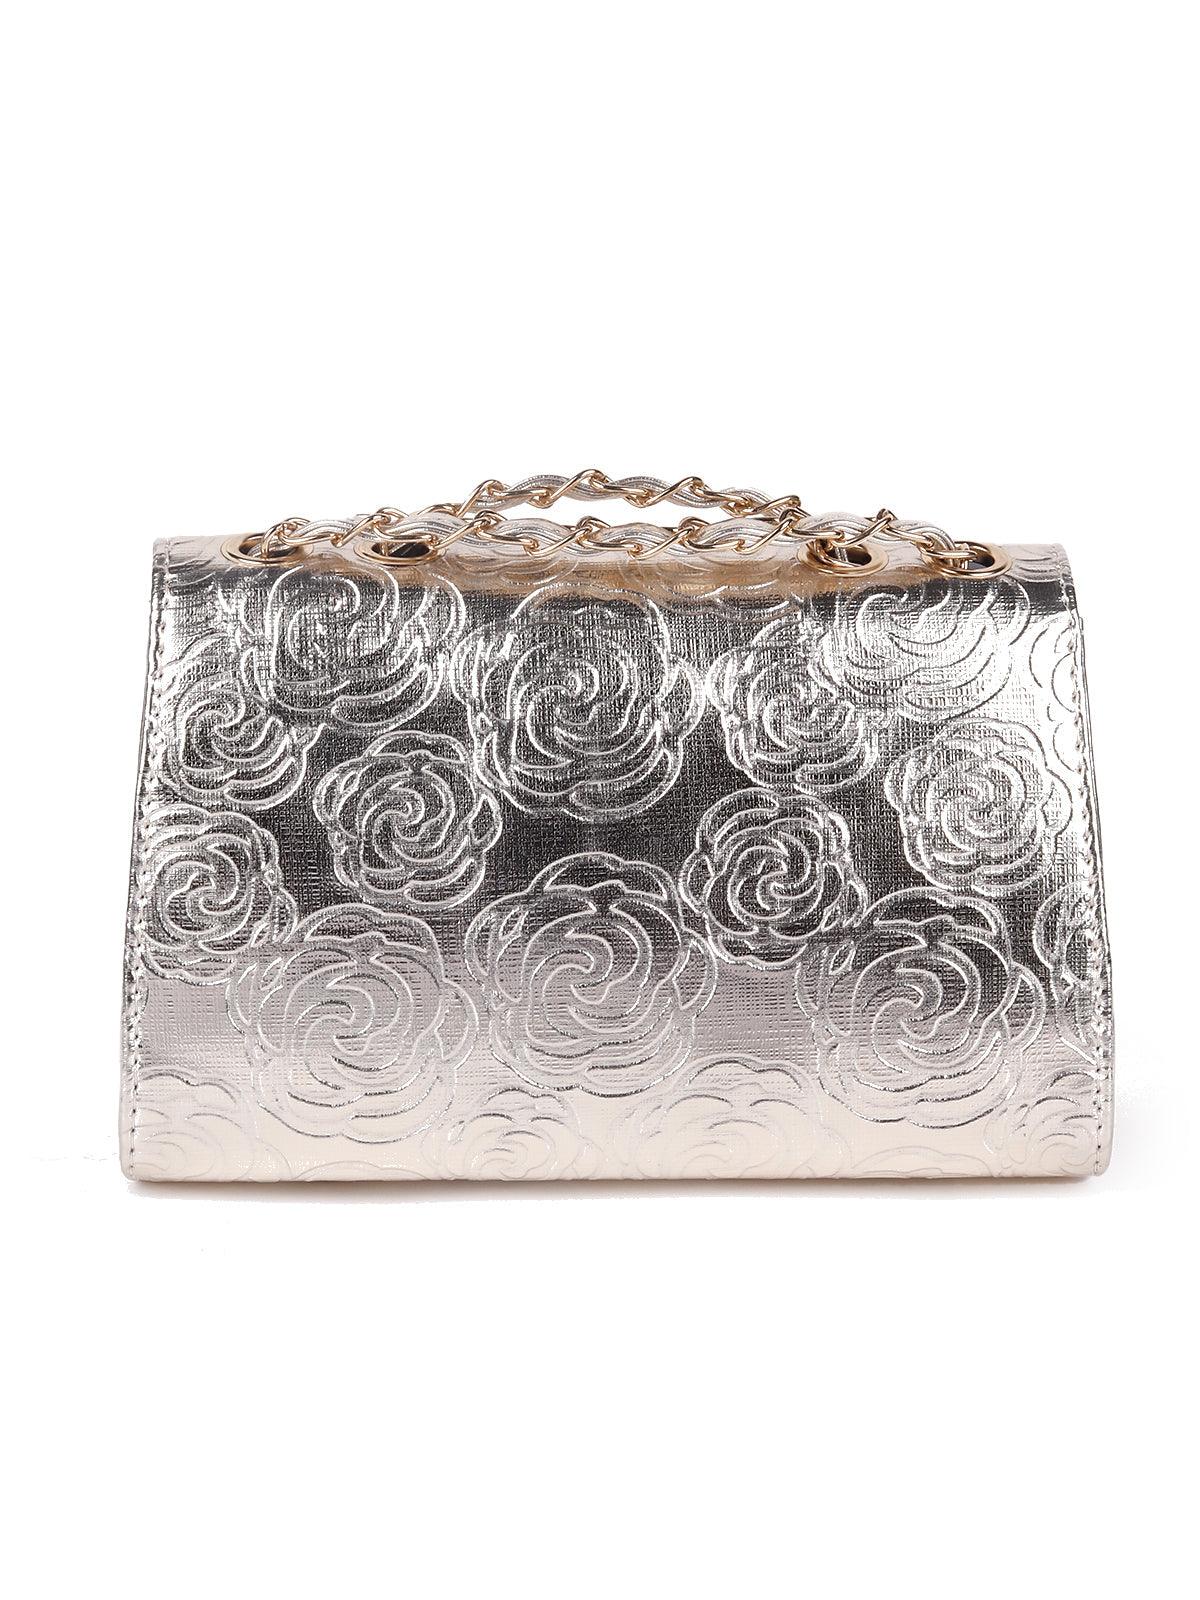 Metallic silver floral sling bag for women - Odette